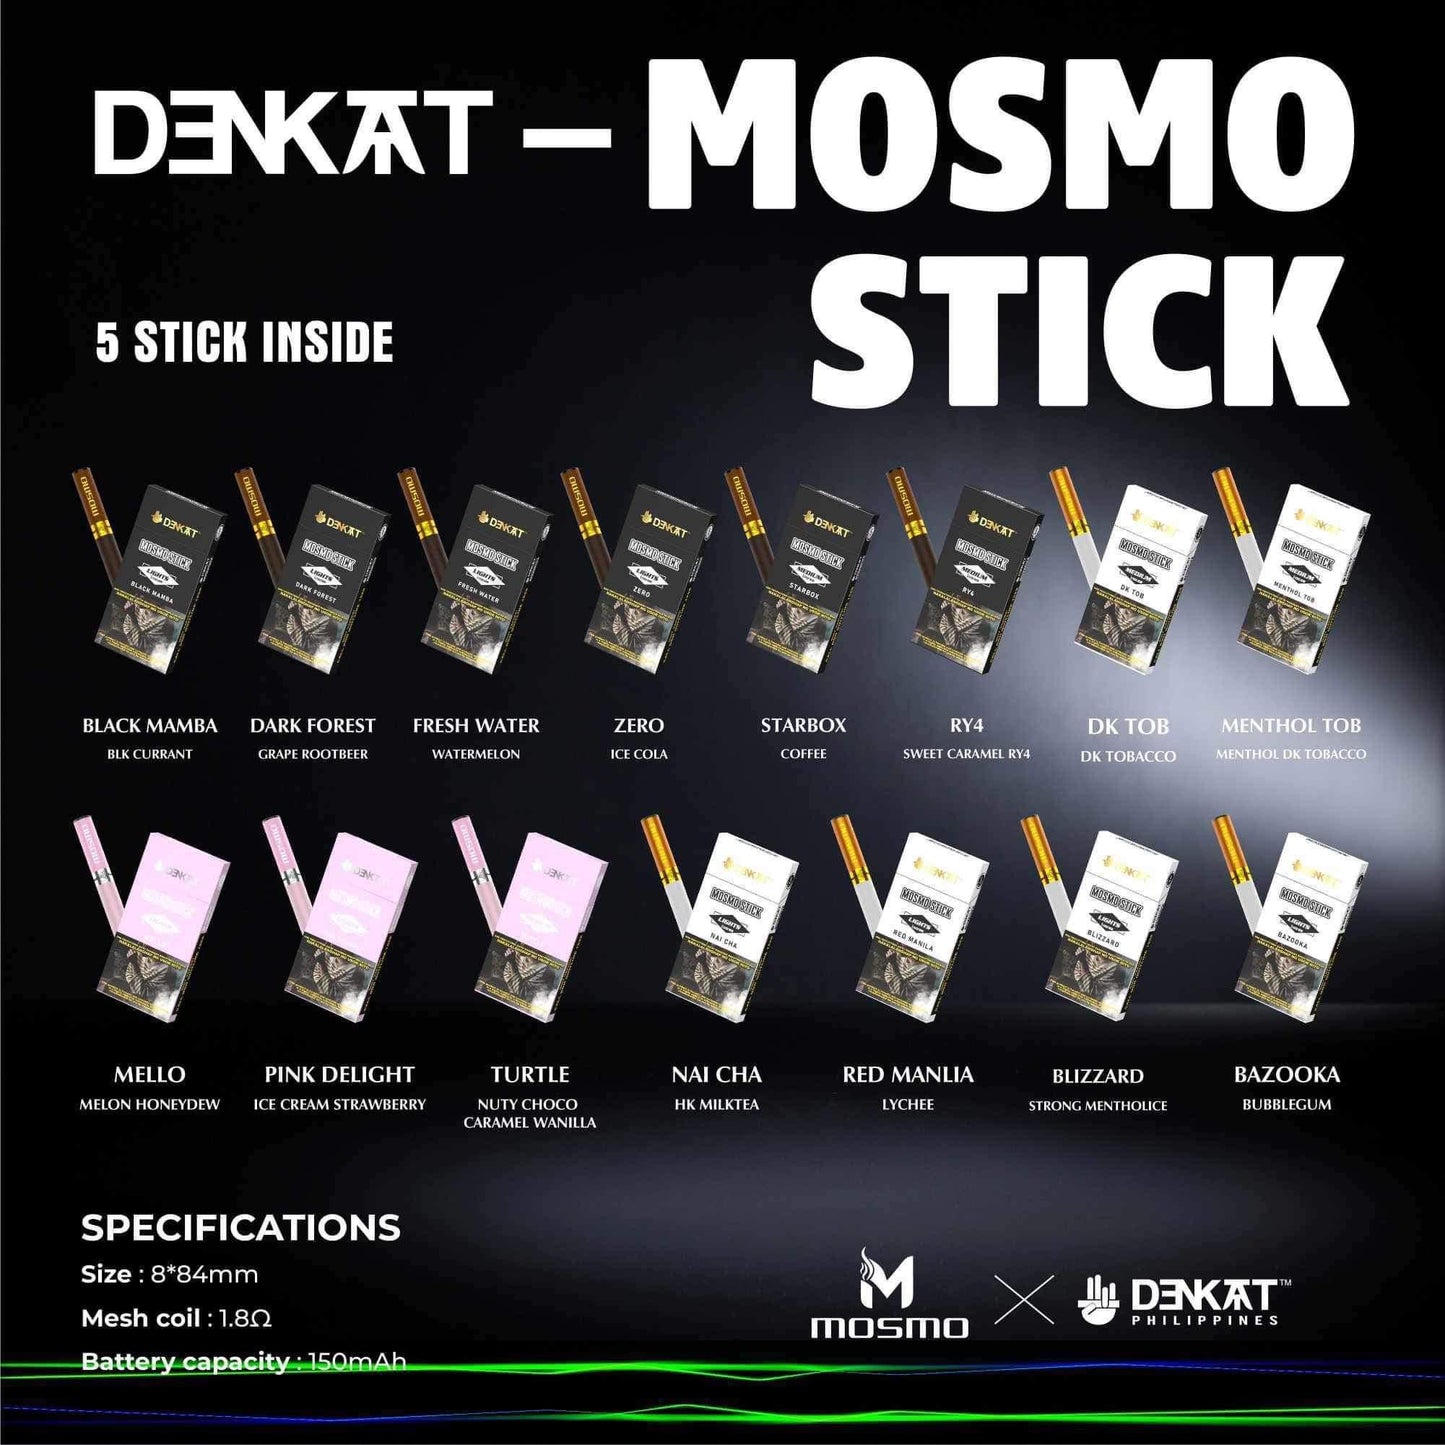 Denkat-Mosmo Stick (5 stick per pack)